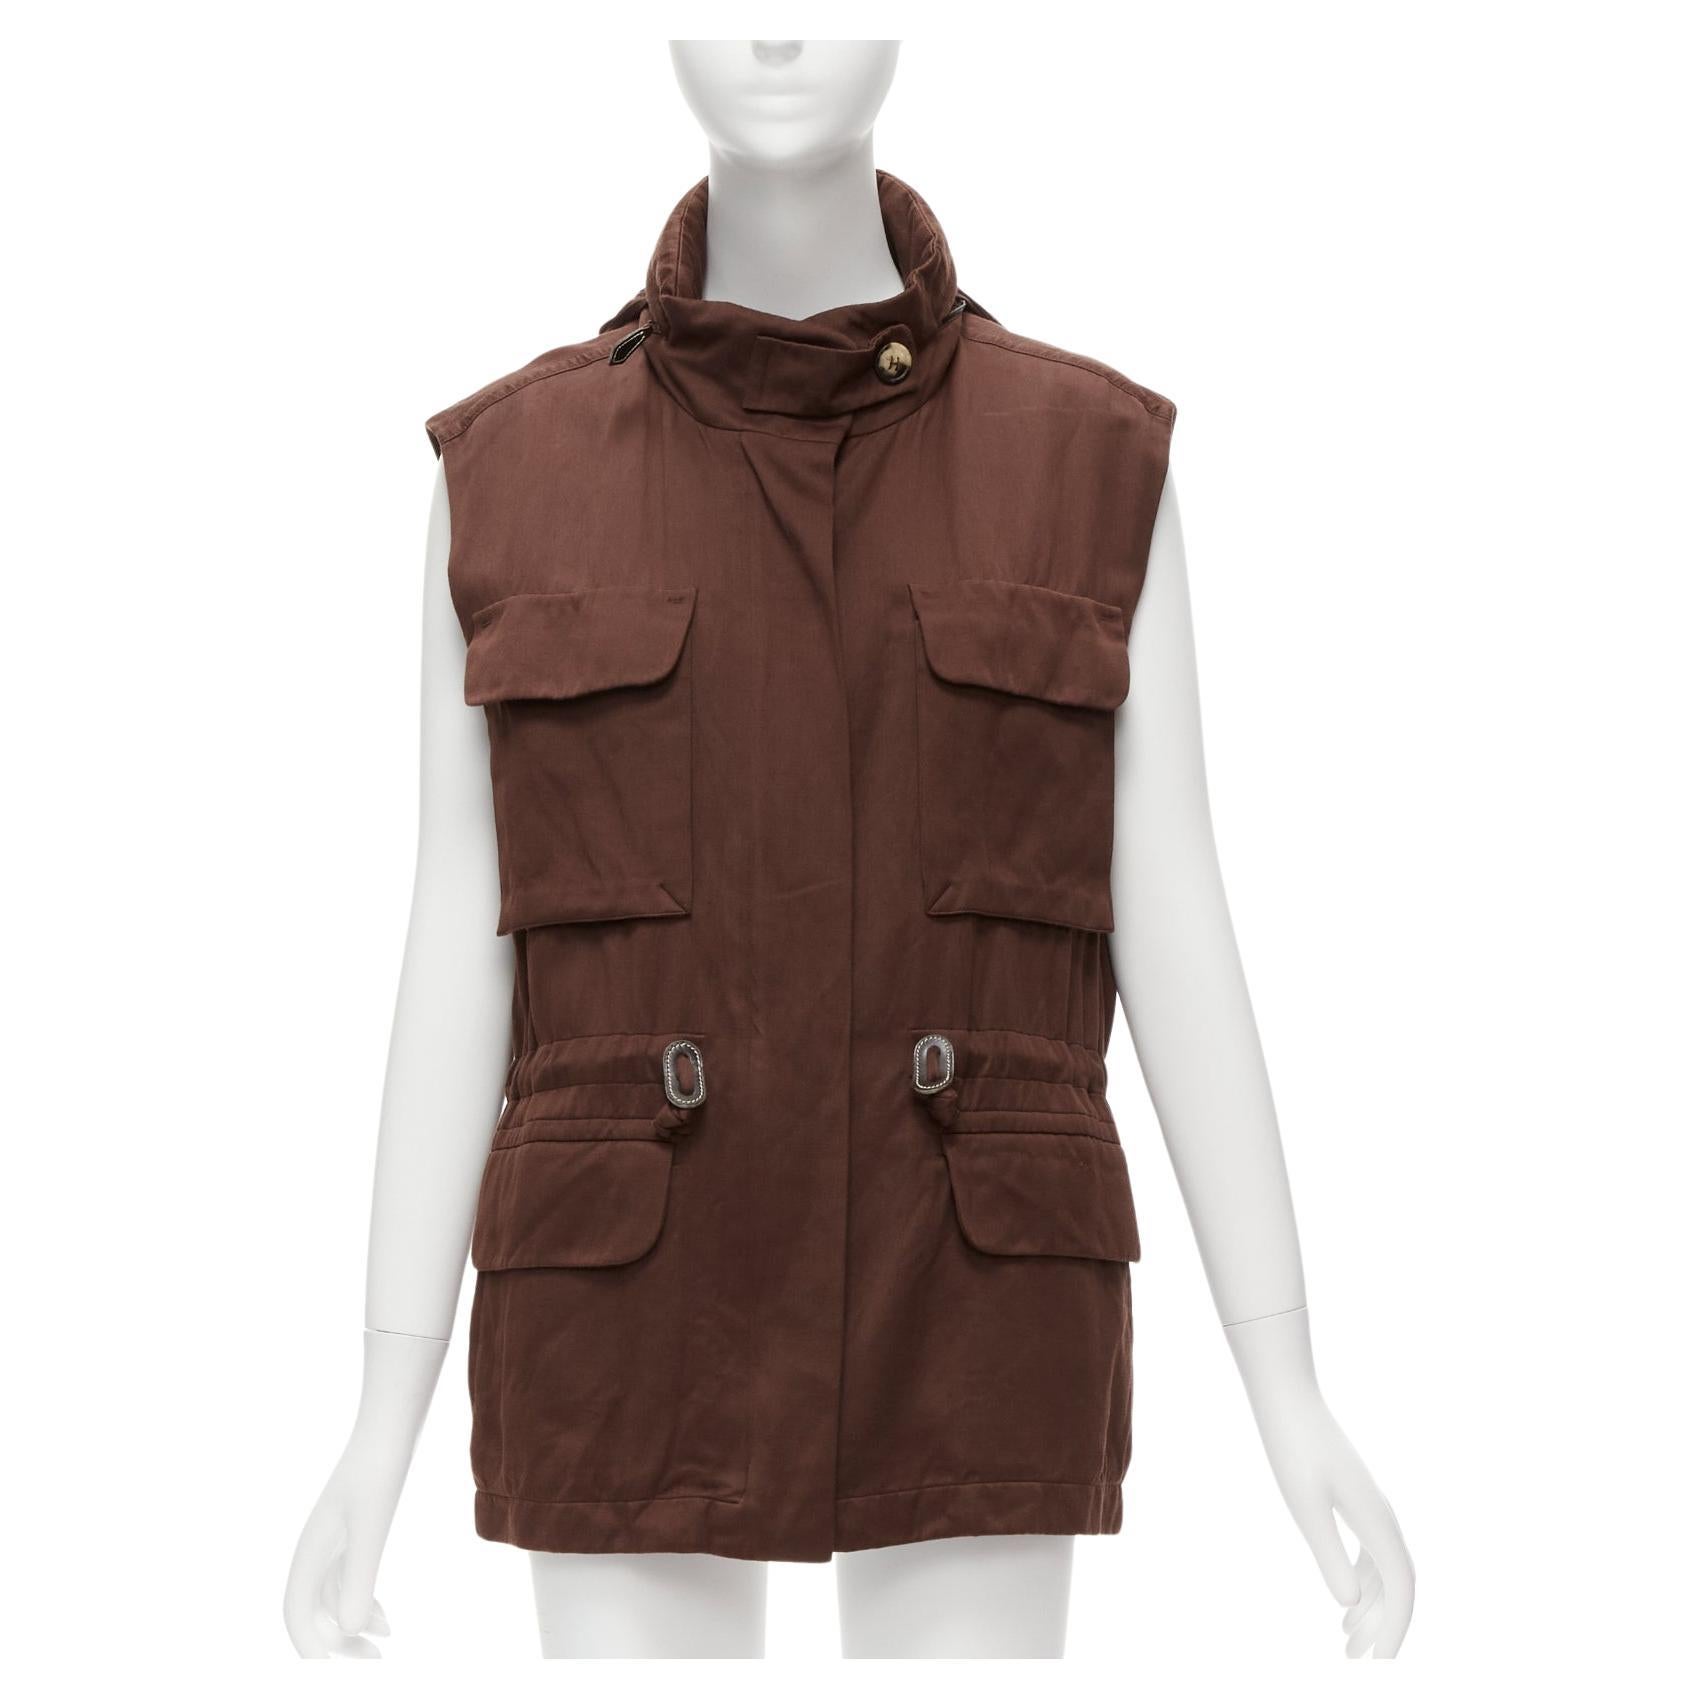 HERMES Martin Margiela Vintage cotton linen cargo pockets vest jacket FR40 L